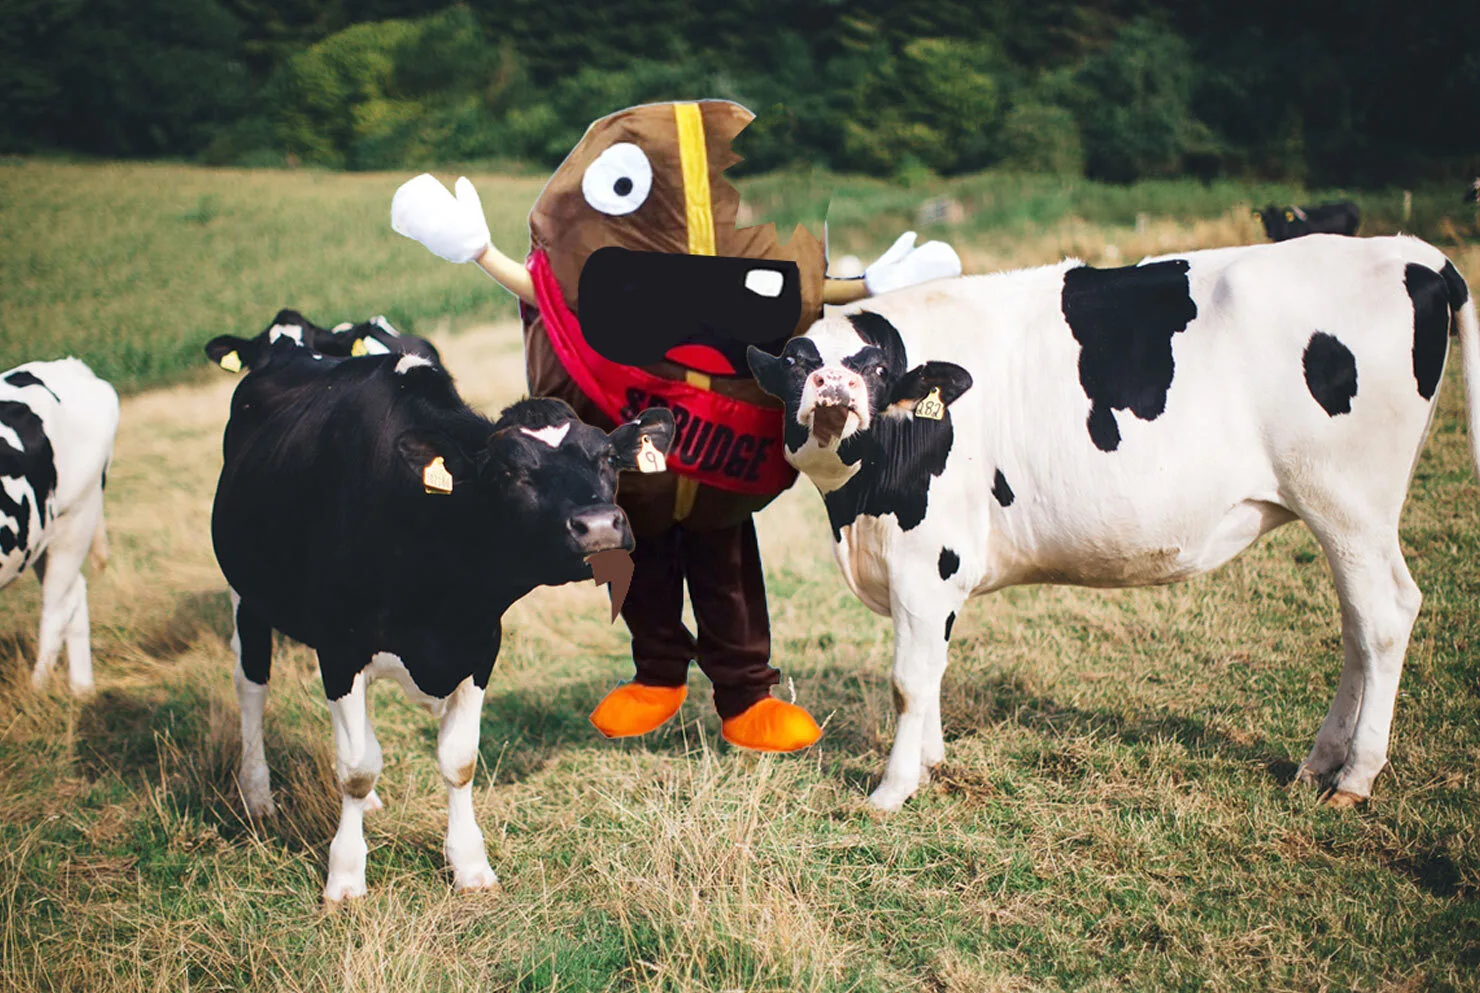 cows eating spesh l tee coffee bean mascot sprudge